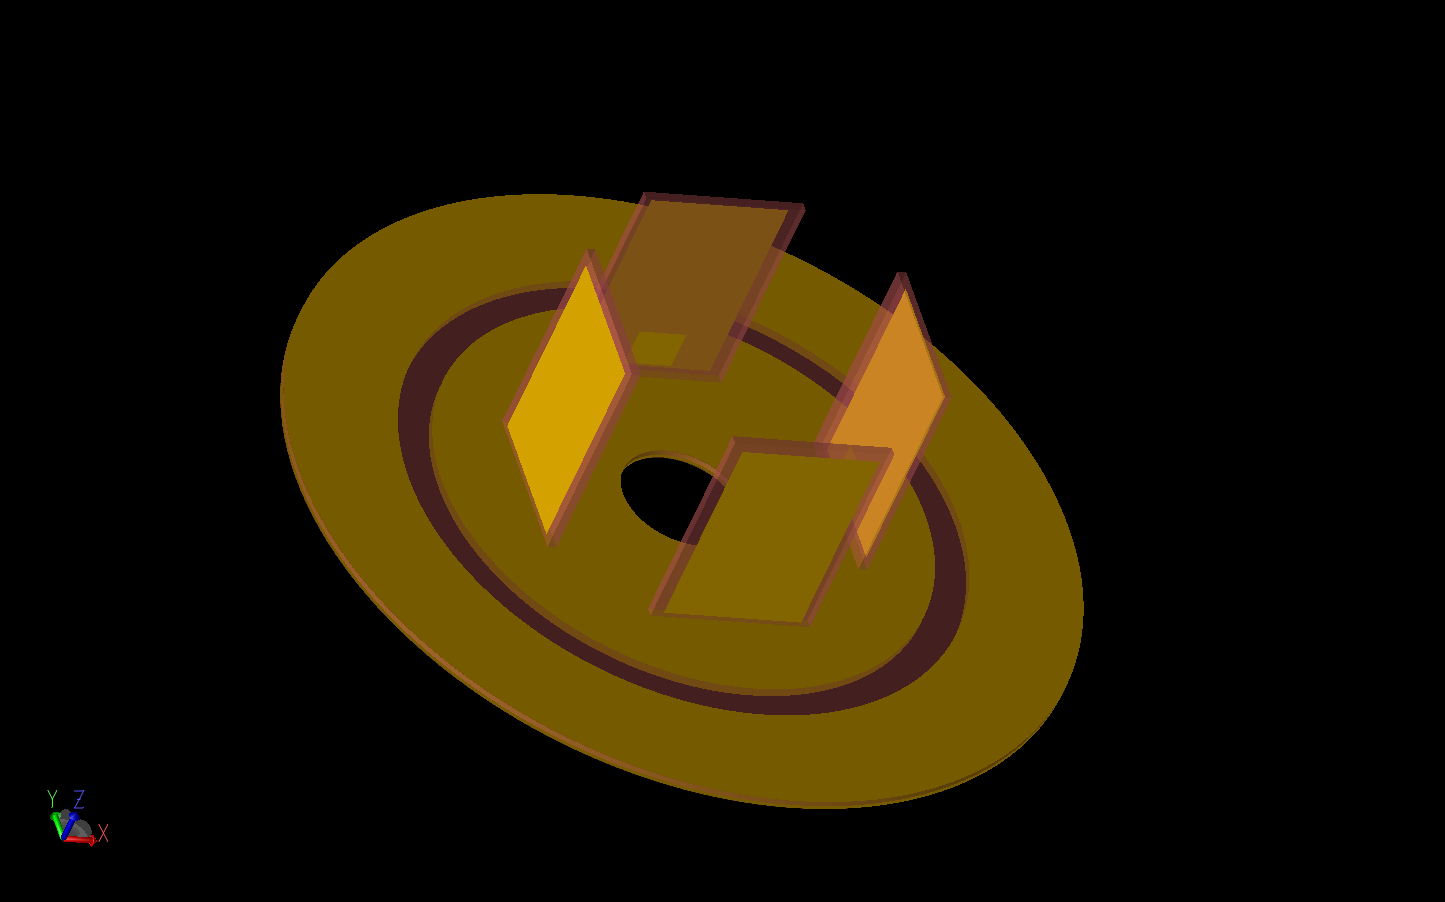 図3：円形のグランドプレーン上に4つのエレメントを配置した下部電気モノポール・アレイを示す。各エレメントの内側に小さなフィードパッチがある。